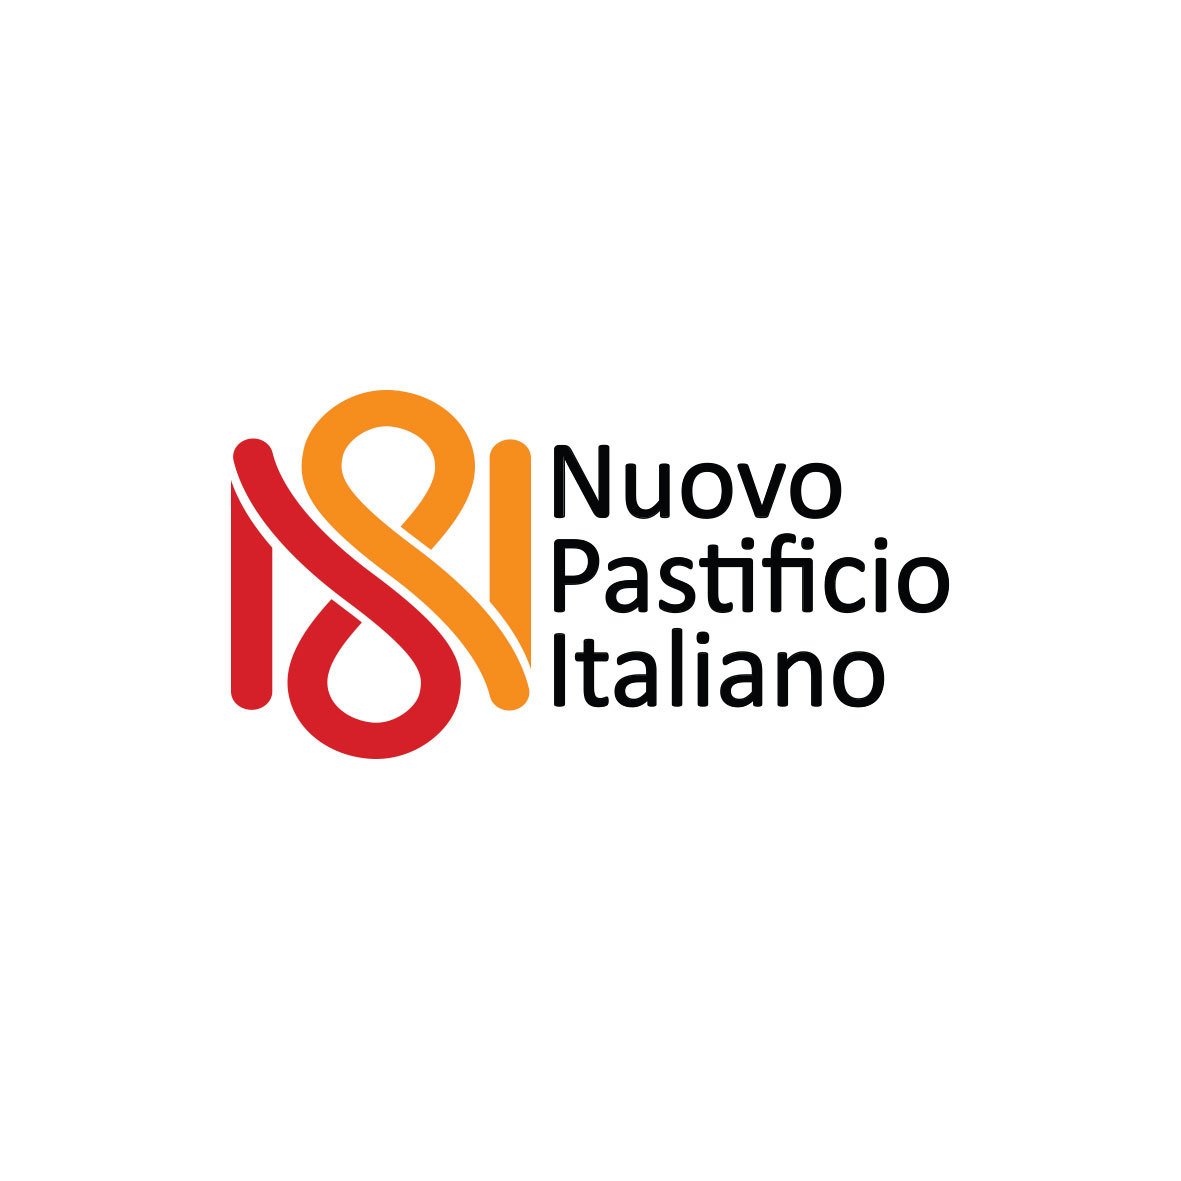 Nuovo Pastificio Italiano - 2014